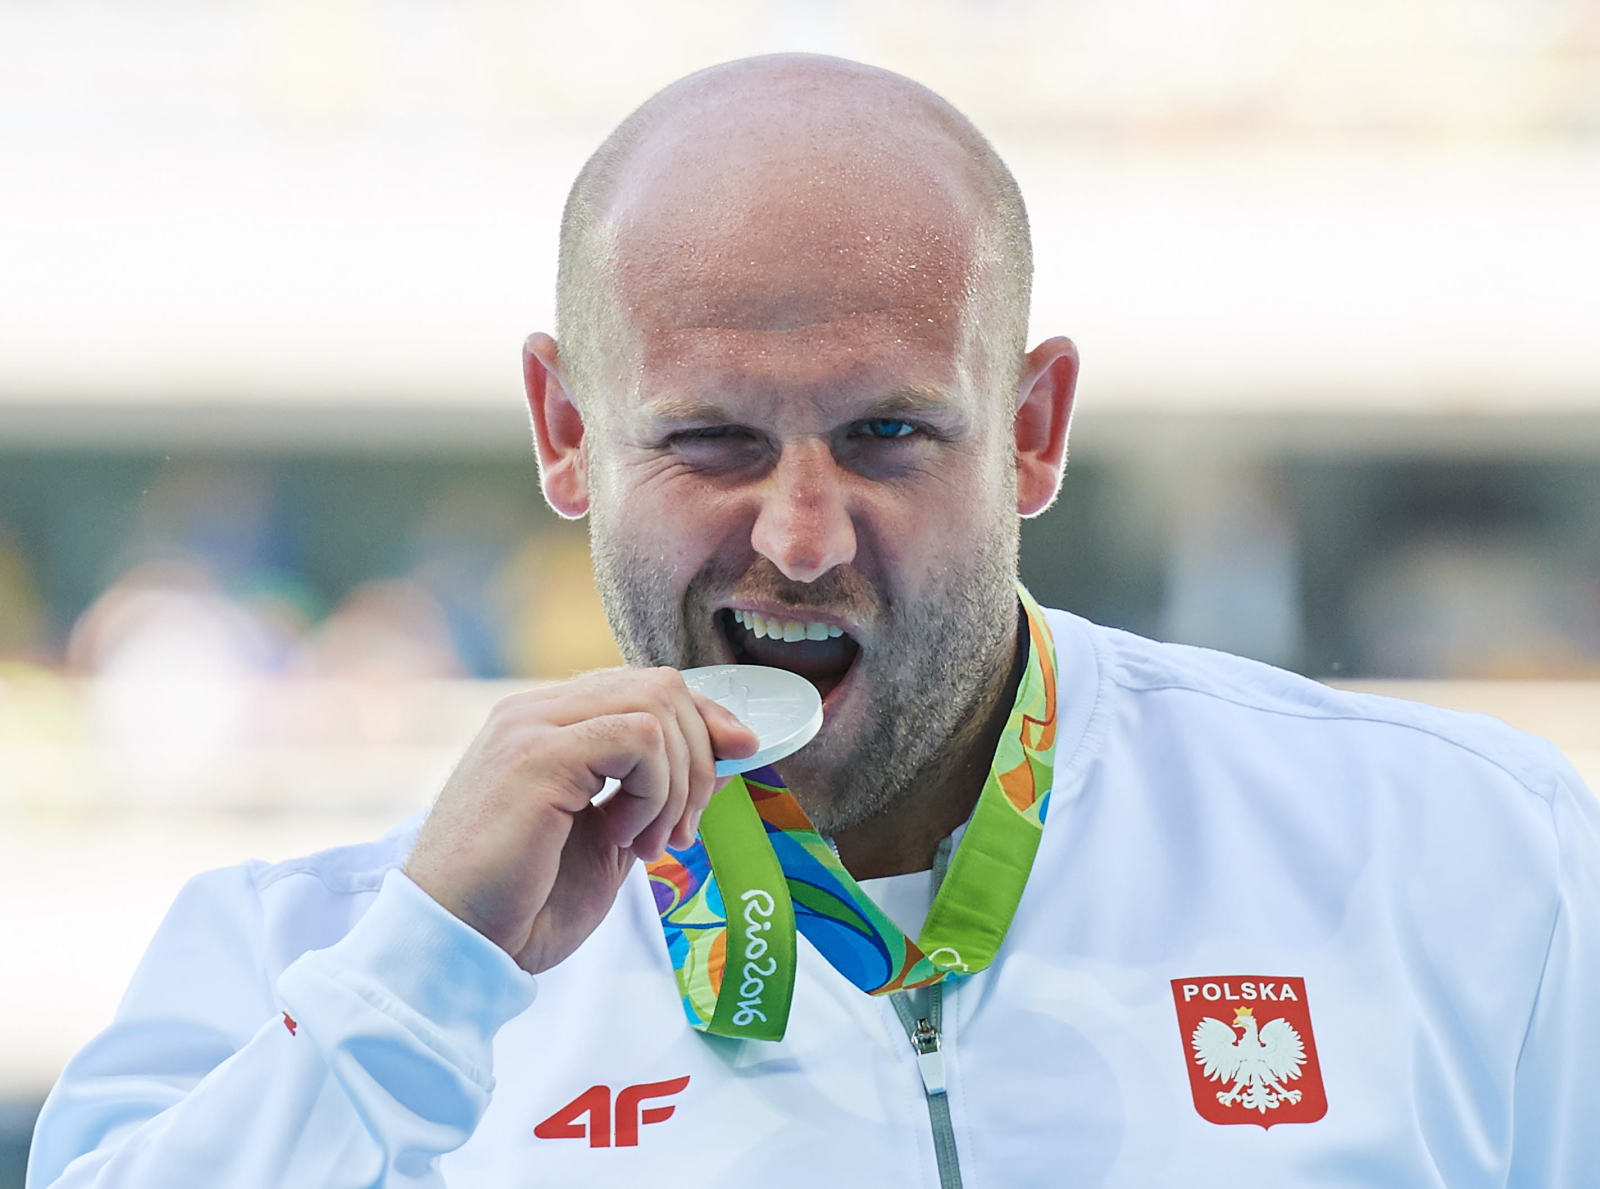 piotr-ma-achowski-sprzeda-sw-j-srebrny-medal-olimpijski-wspania-y